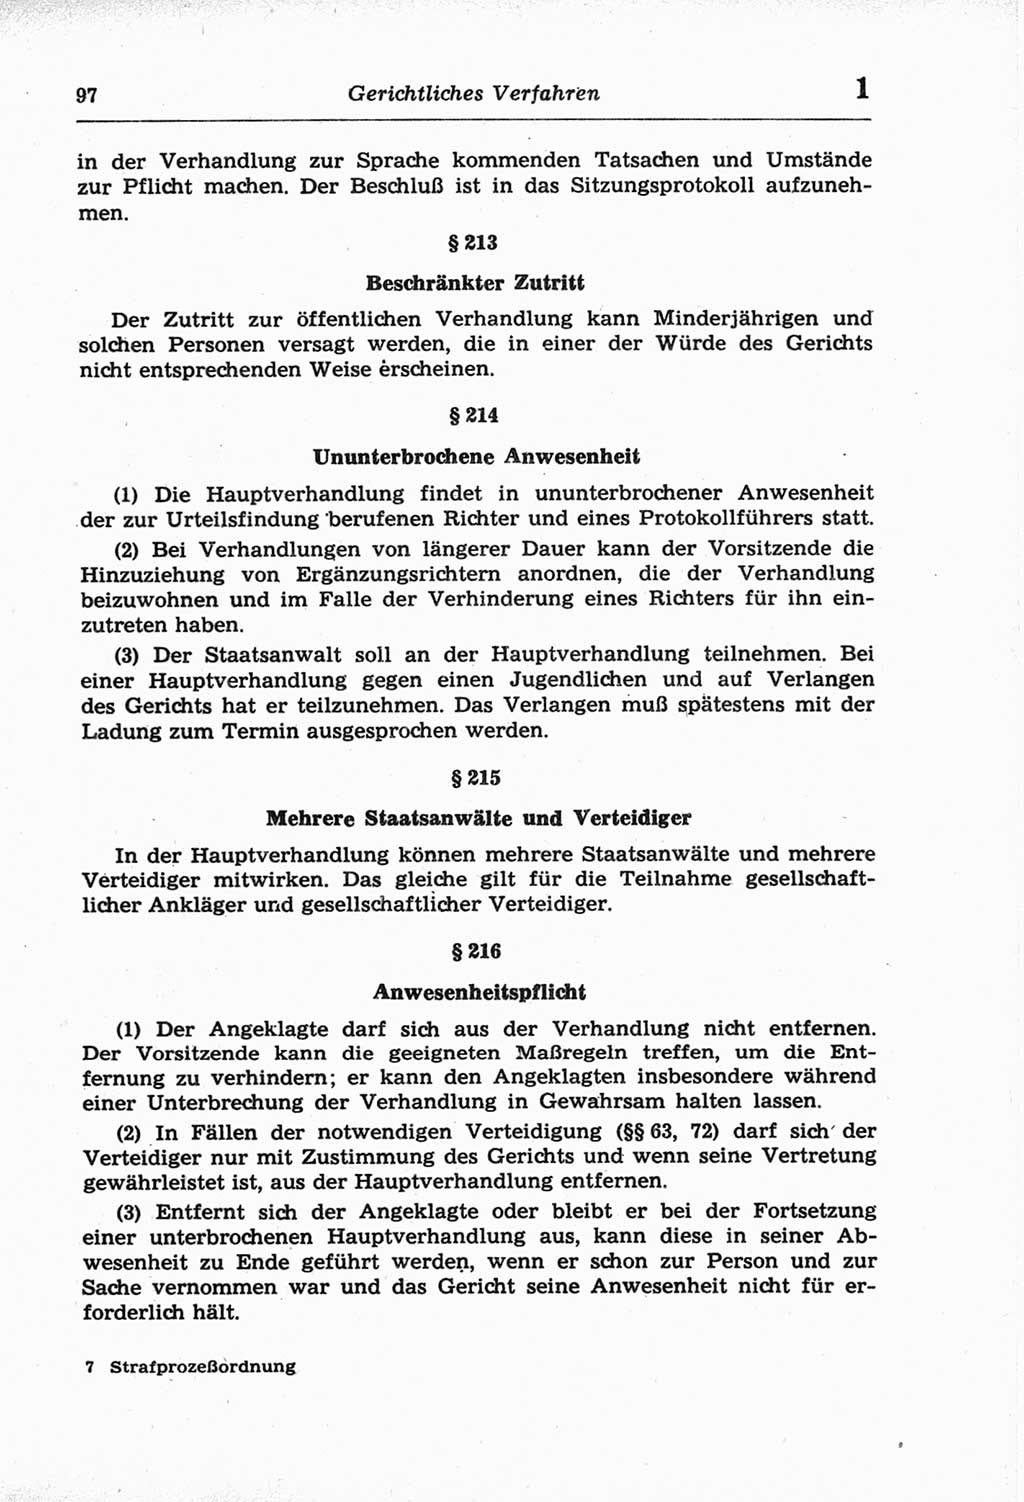 Strafprozeßordnung (StPO) der Deutschen Demokratischen Republik (DDR) und angrenzende Gesetze und Bestimmungen 1968, Seite 97 (StPO Ges. Bstgn. DDR 1968, S. 97)